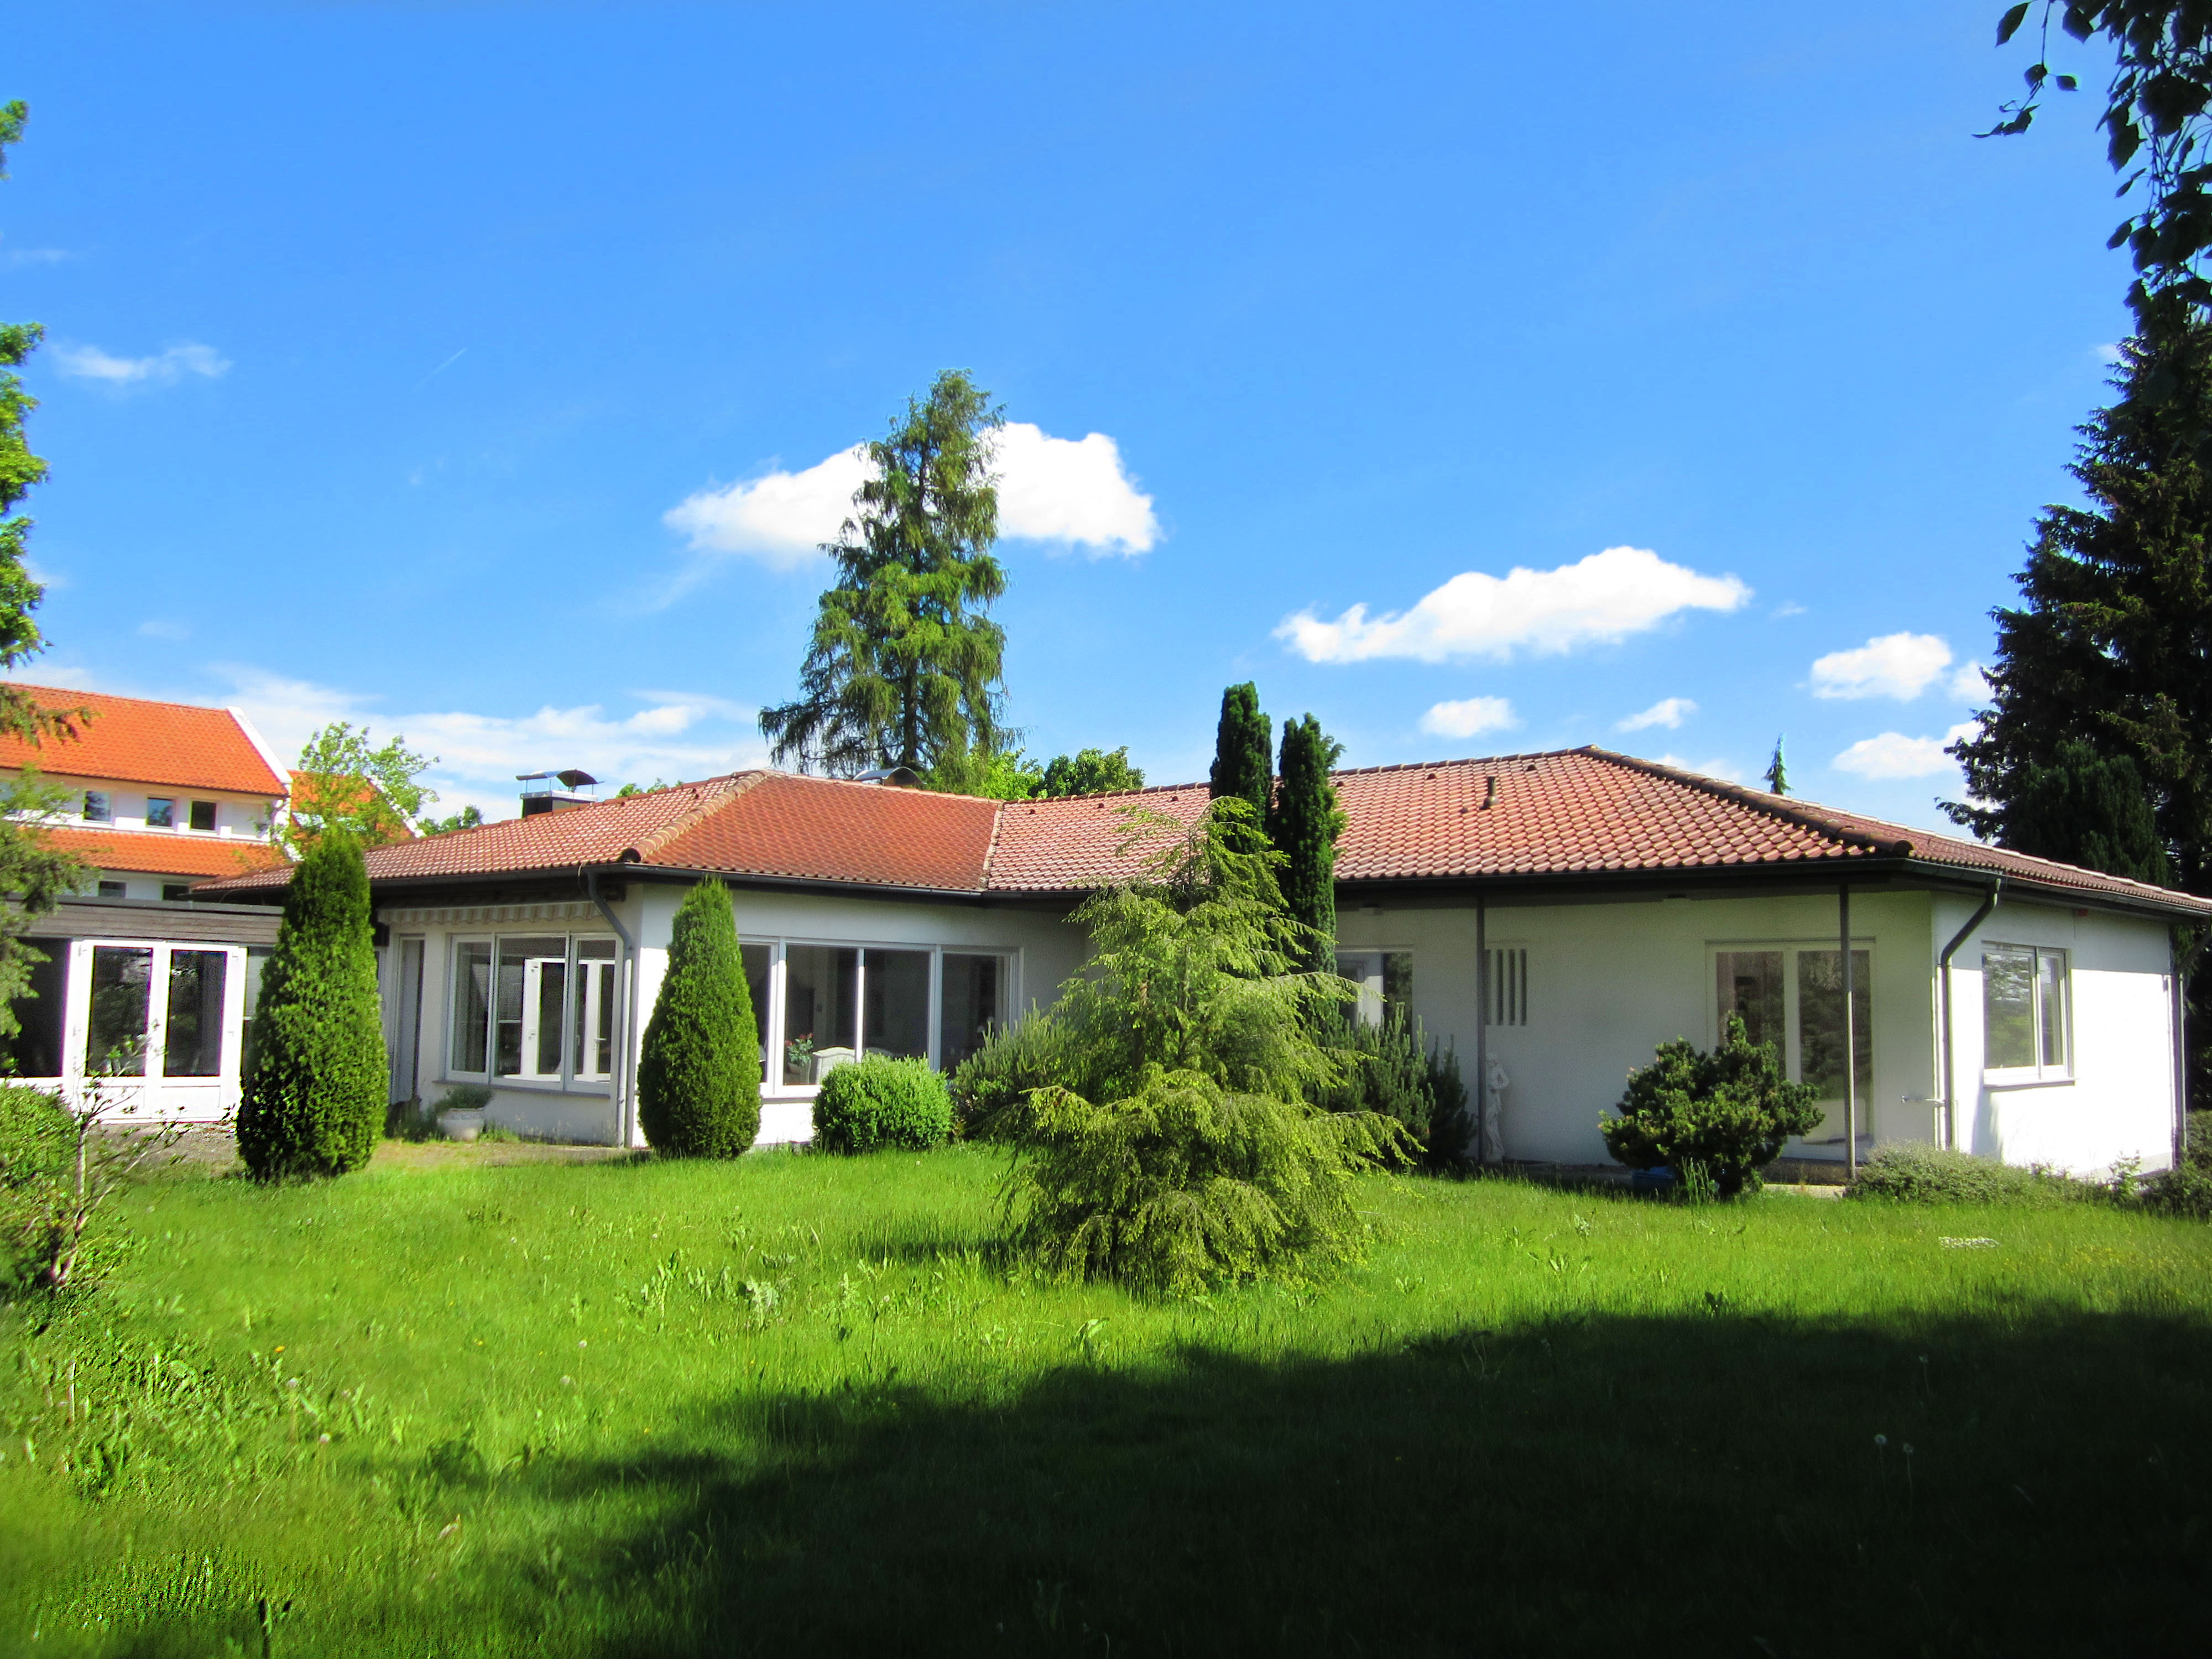 Walmdach-Villa, Straubenhalde in Bad Saulgau